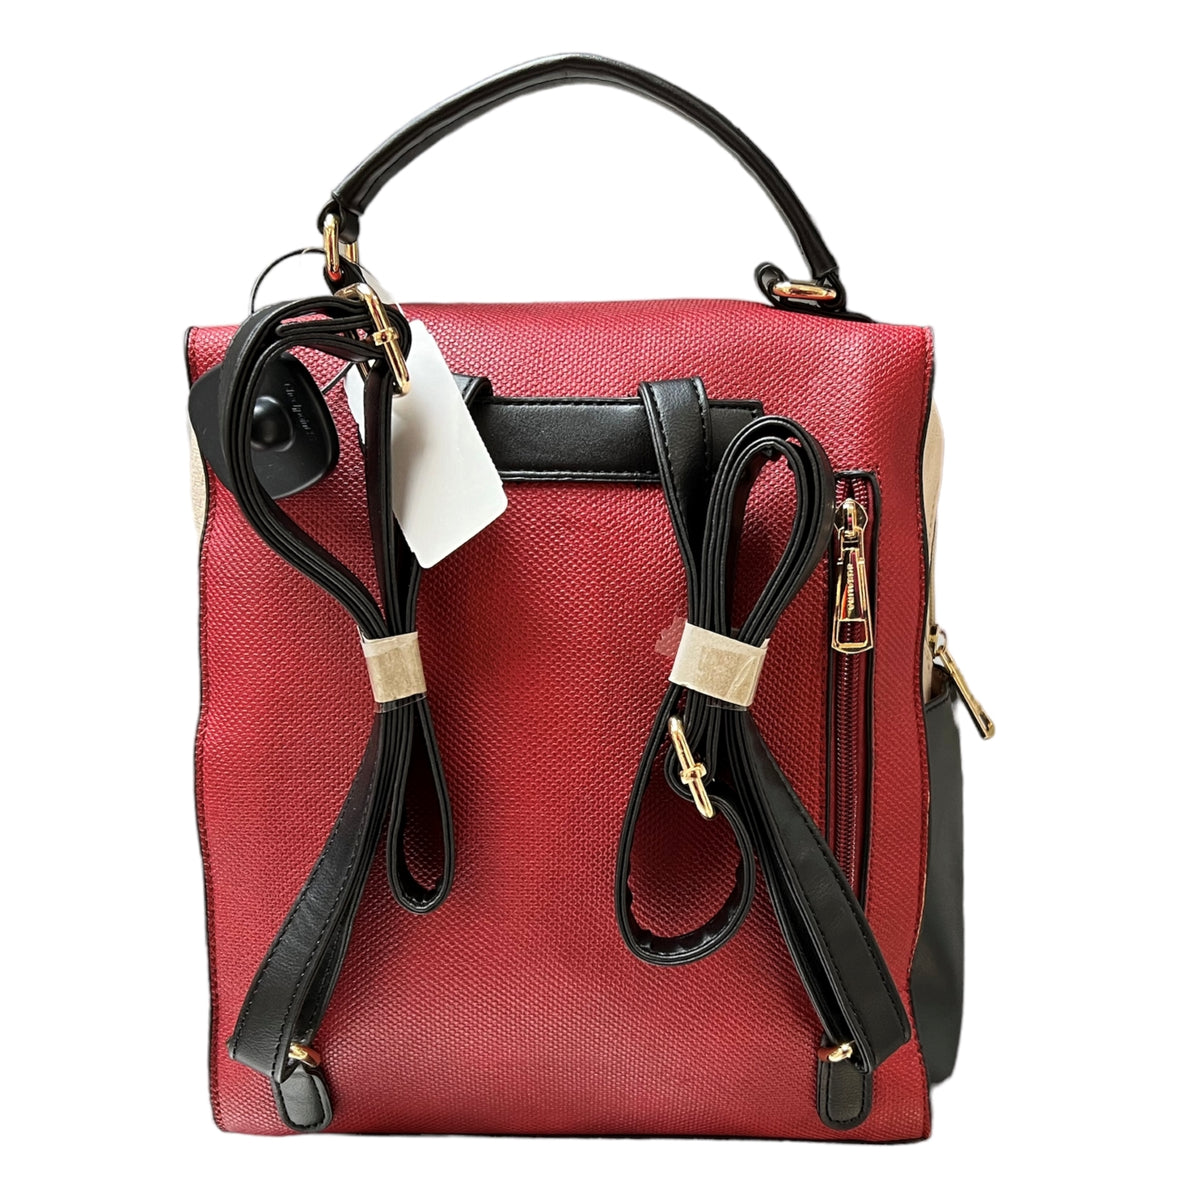 Le Bosalina sac à dos rouge multi est très chic et à la mode avec ses couleurs éclatantes. Il est le compagnon parfait pour vos voyages et vos sorties avec sa combinaison rouge, beige et noir. Prêt à être saisi pour créer des looks incroyables et donner à votre style une touche chaleureuse et soudaine !